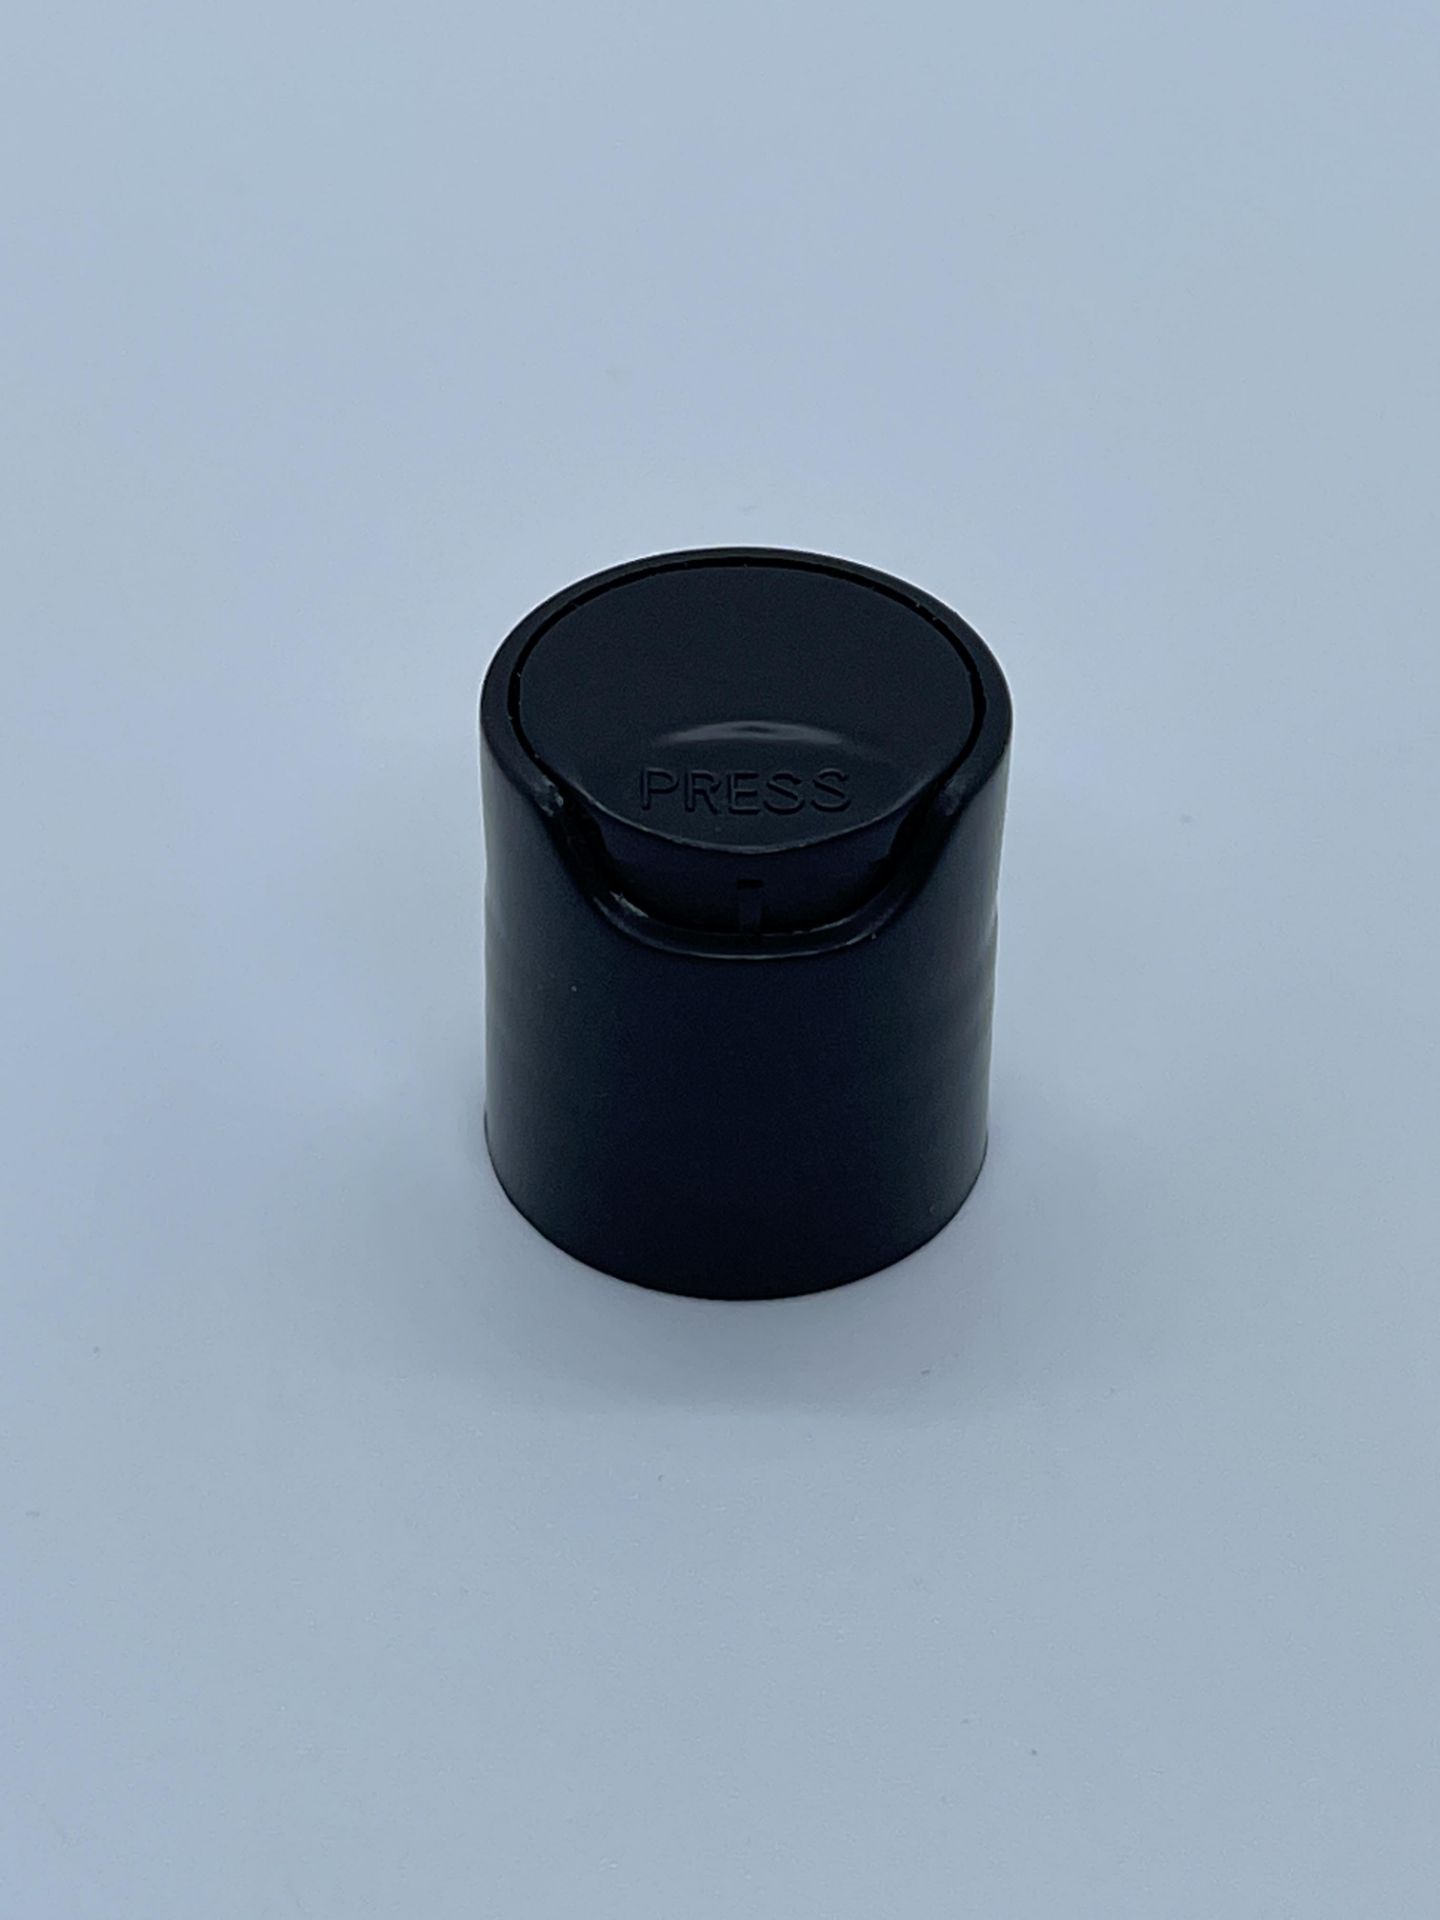 84,000 - Black Disc Bottle Caps for 2 oz plastic bottles and 4 oz glass bottles, 20-410 Threading - Image 4 of 4